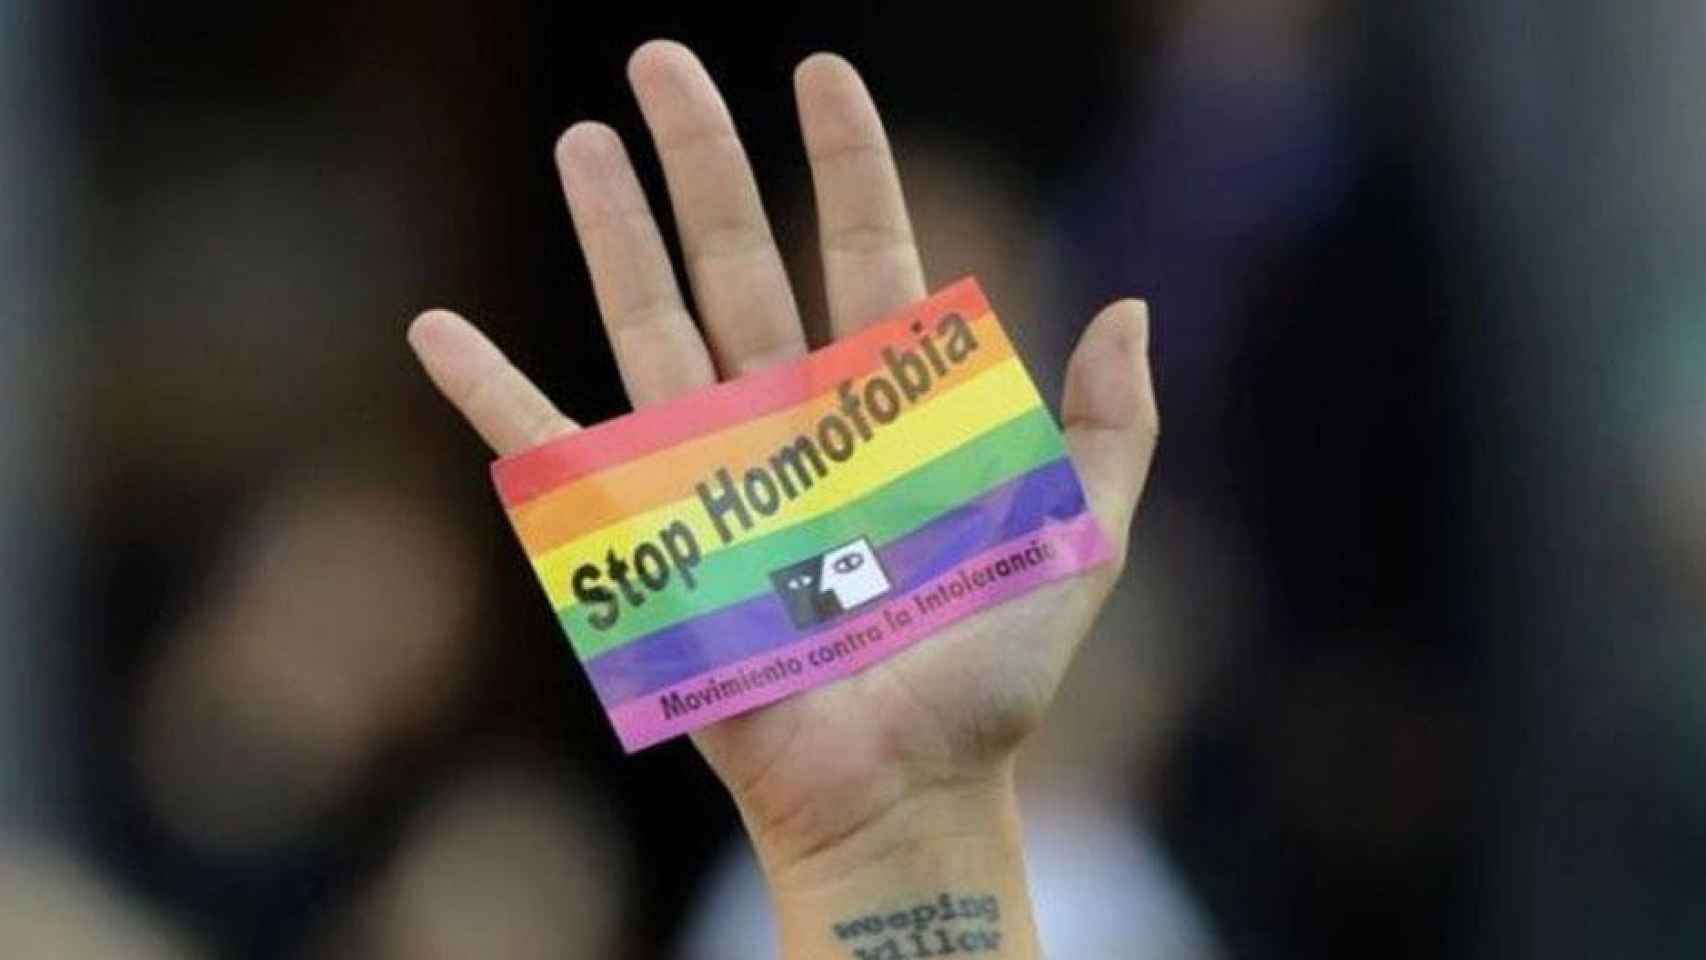 Un mano con un carte de 'Stop homofobia' / EFE